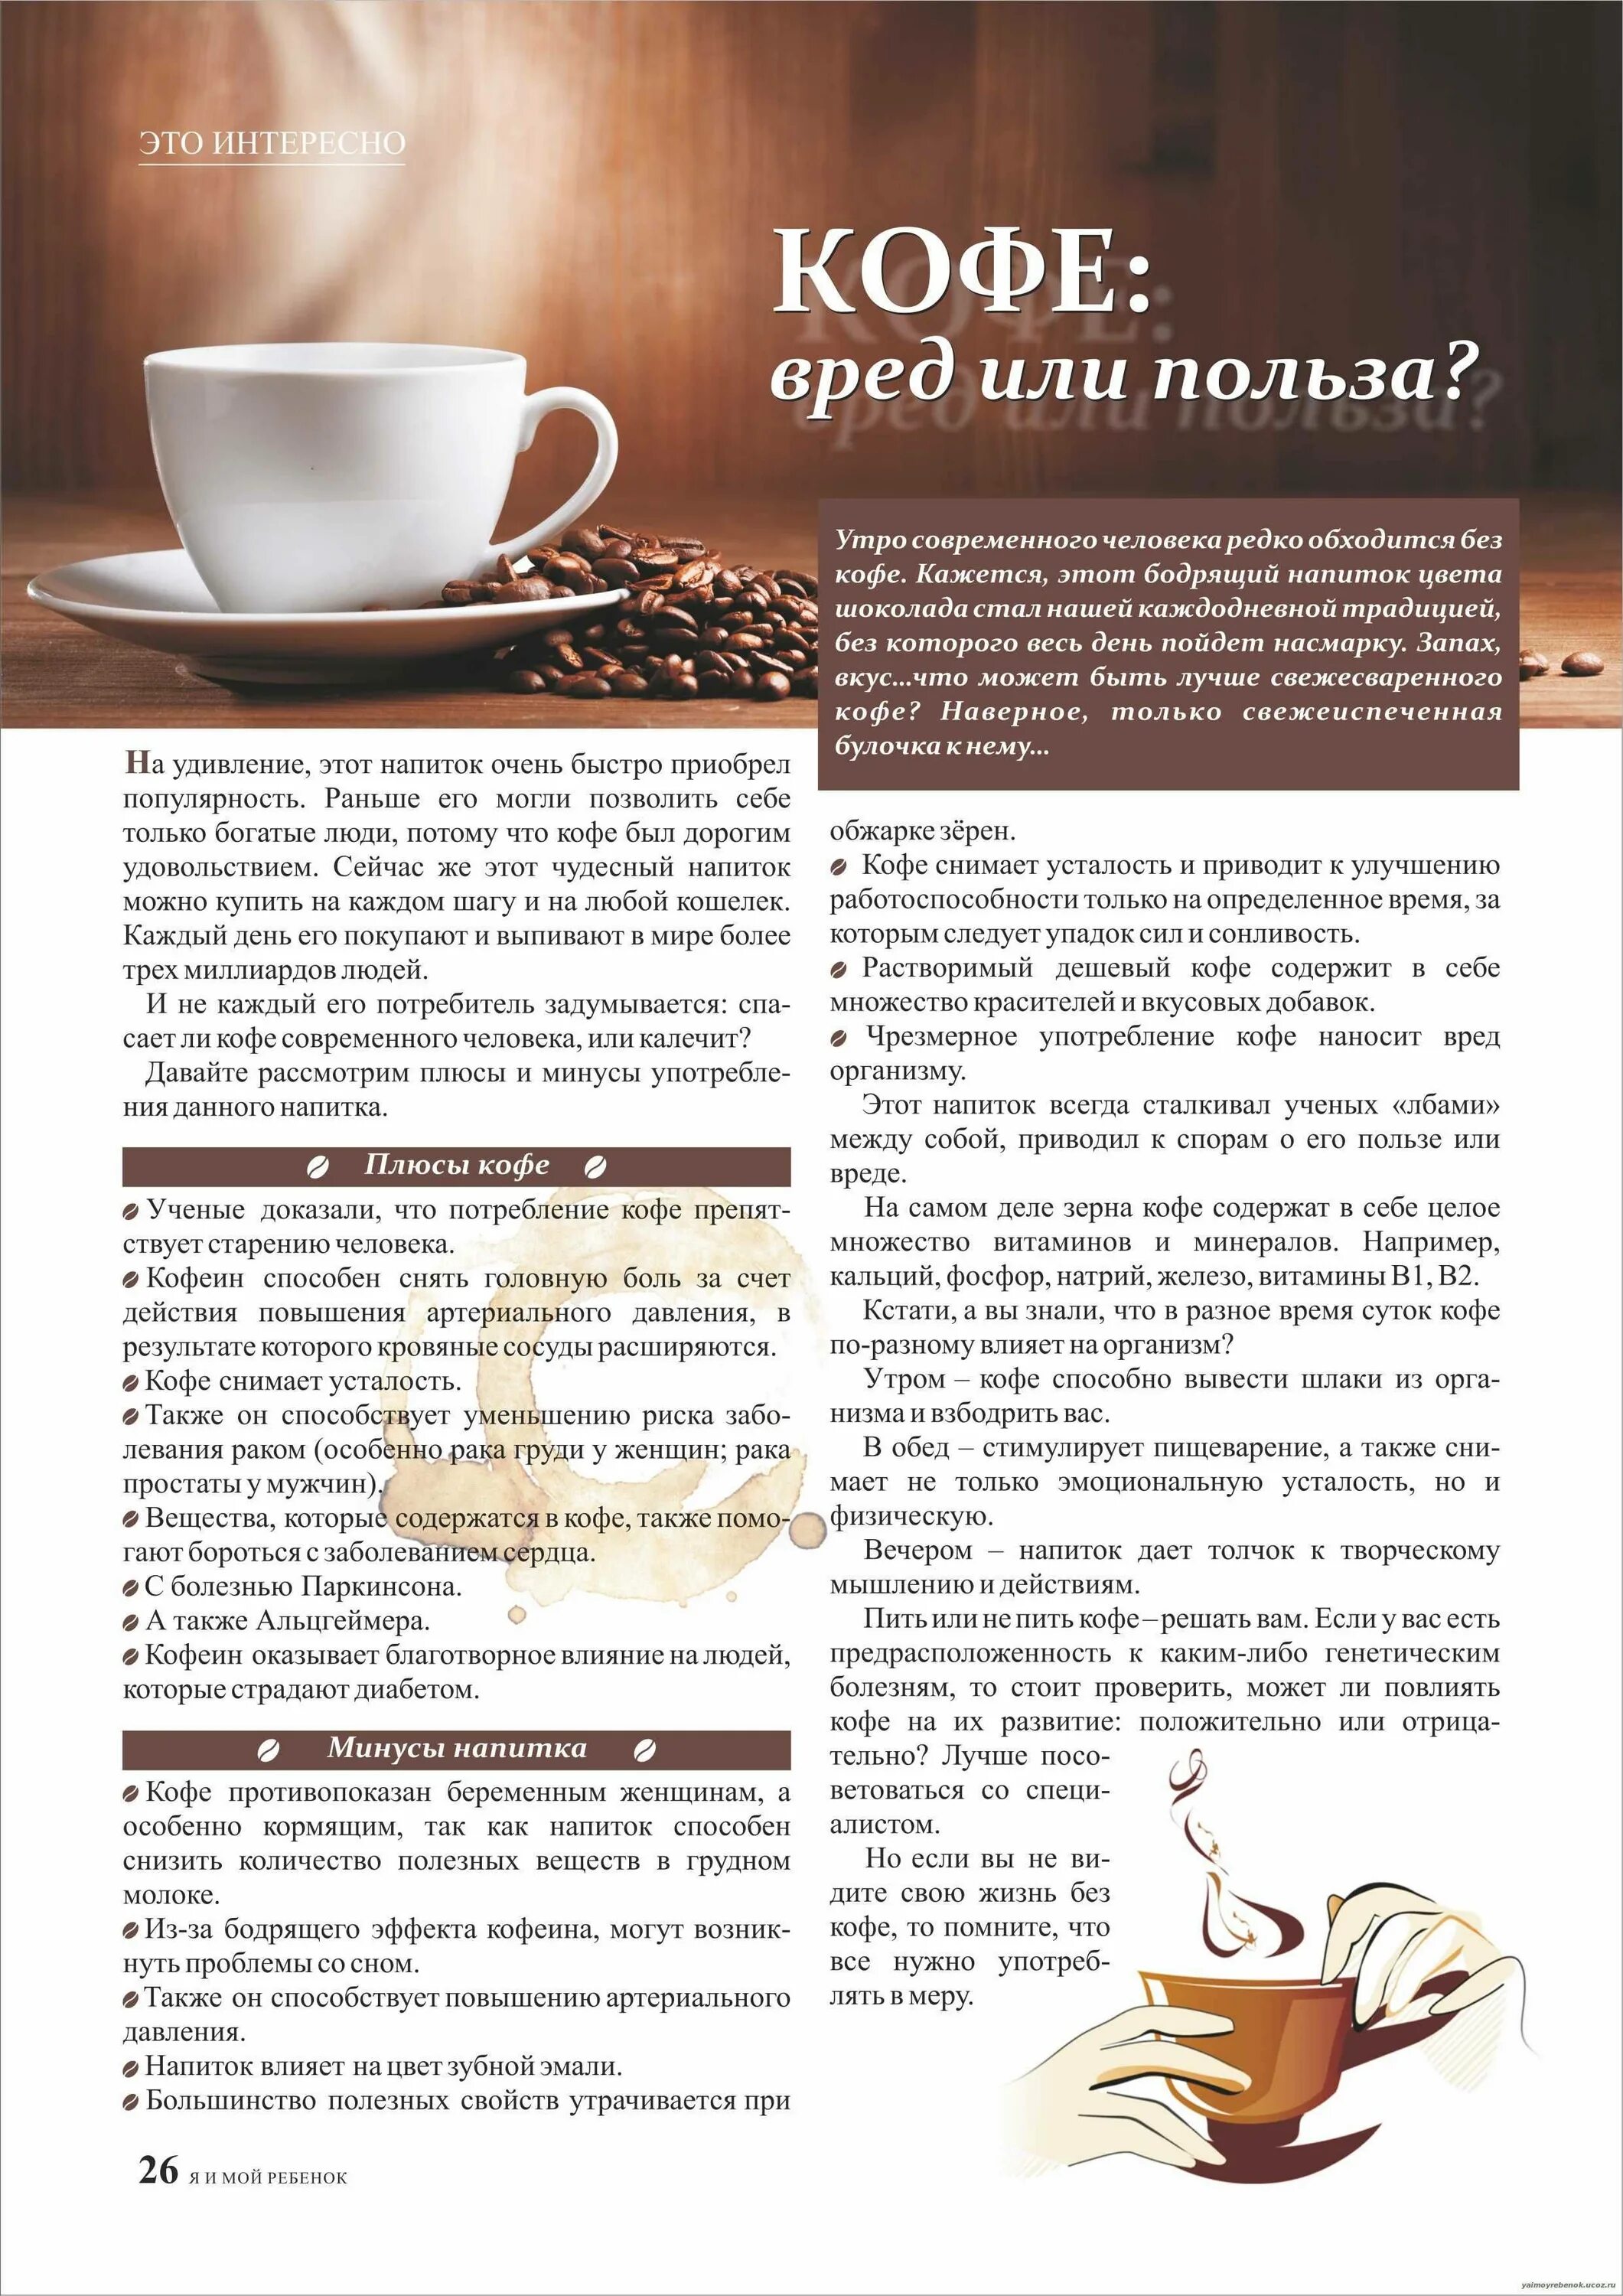 Кофе можно кушать. Кофе полезно для организма. Польза кофе. Кофе полезно или вредно. Польза и вред кофе.